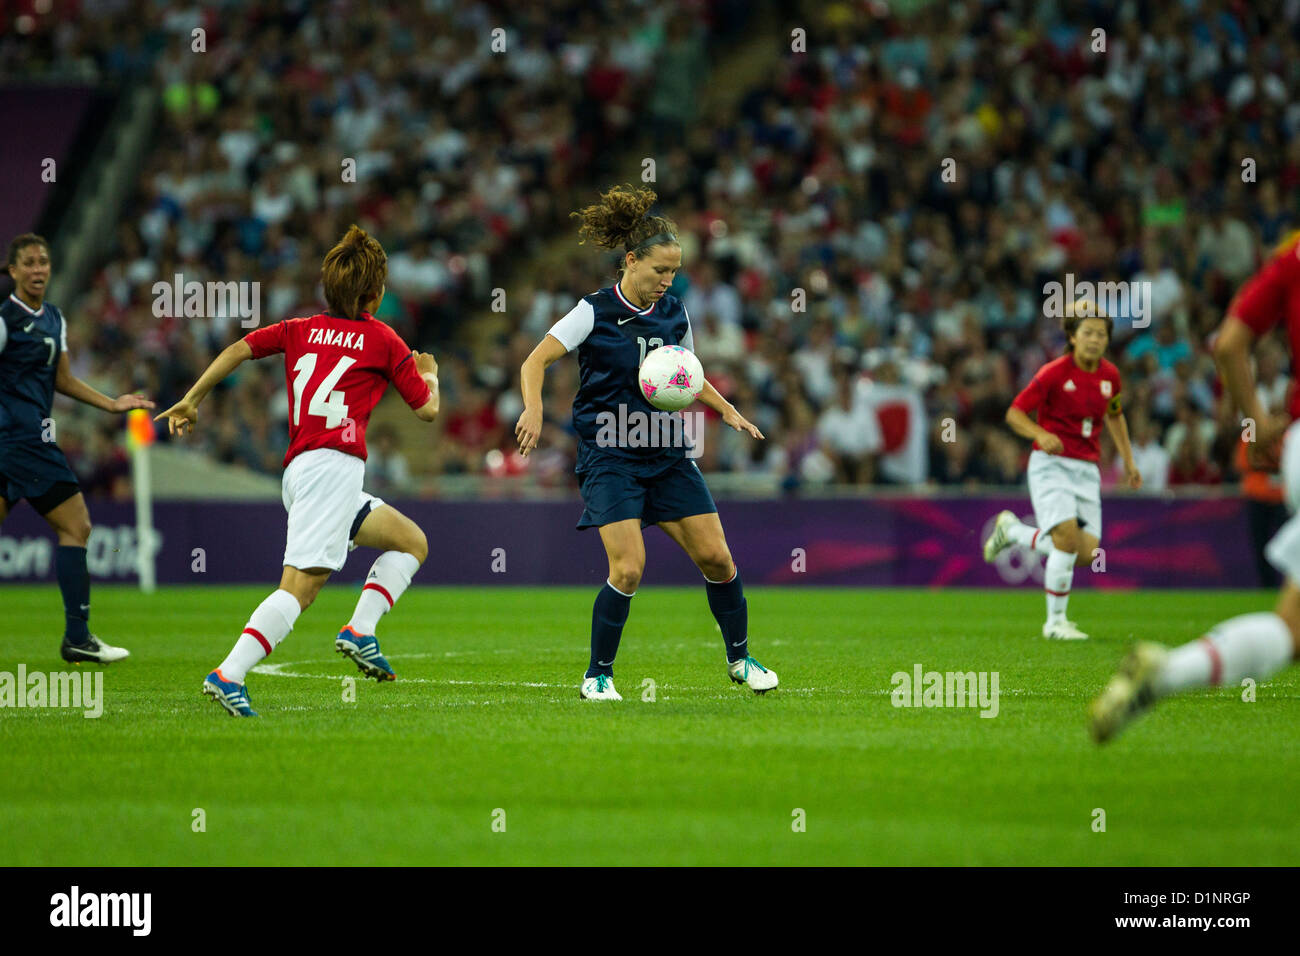 Lauren Cheney (USA)-USA remporte l'or sur le Japon en femmes Football (soccer) aux Jeux Olympiques d'été, Londres 2012 Banque D'Images